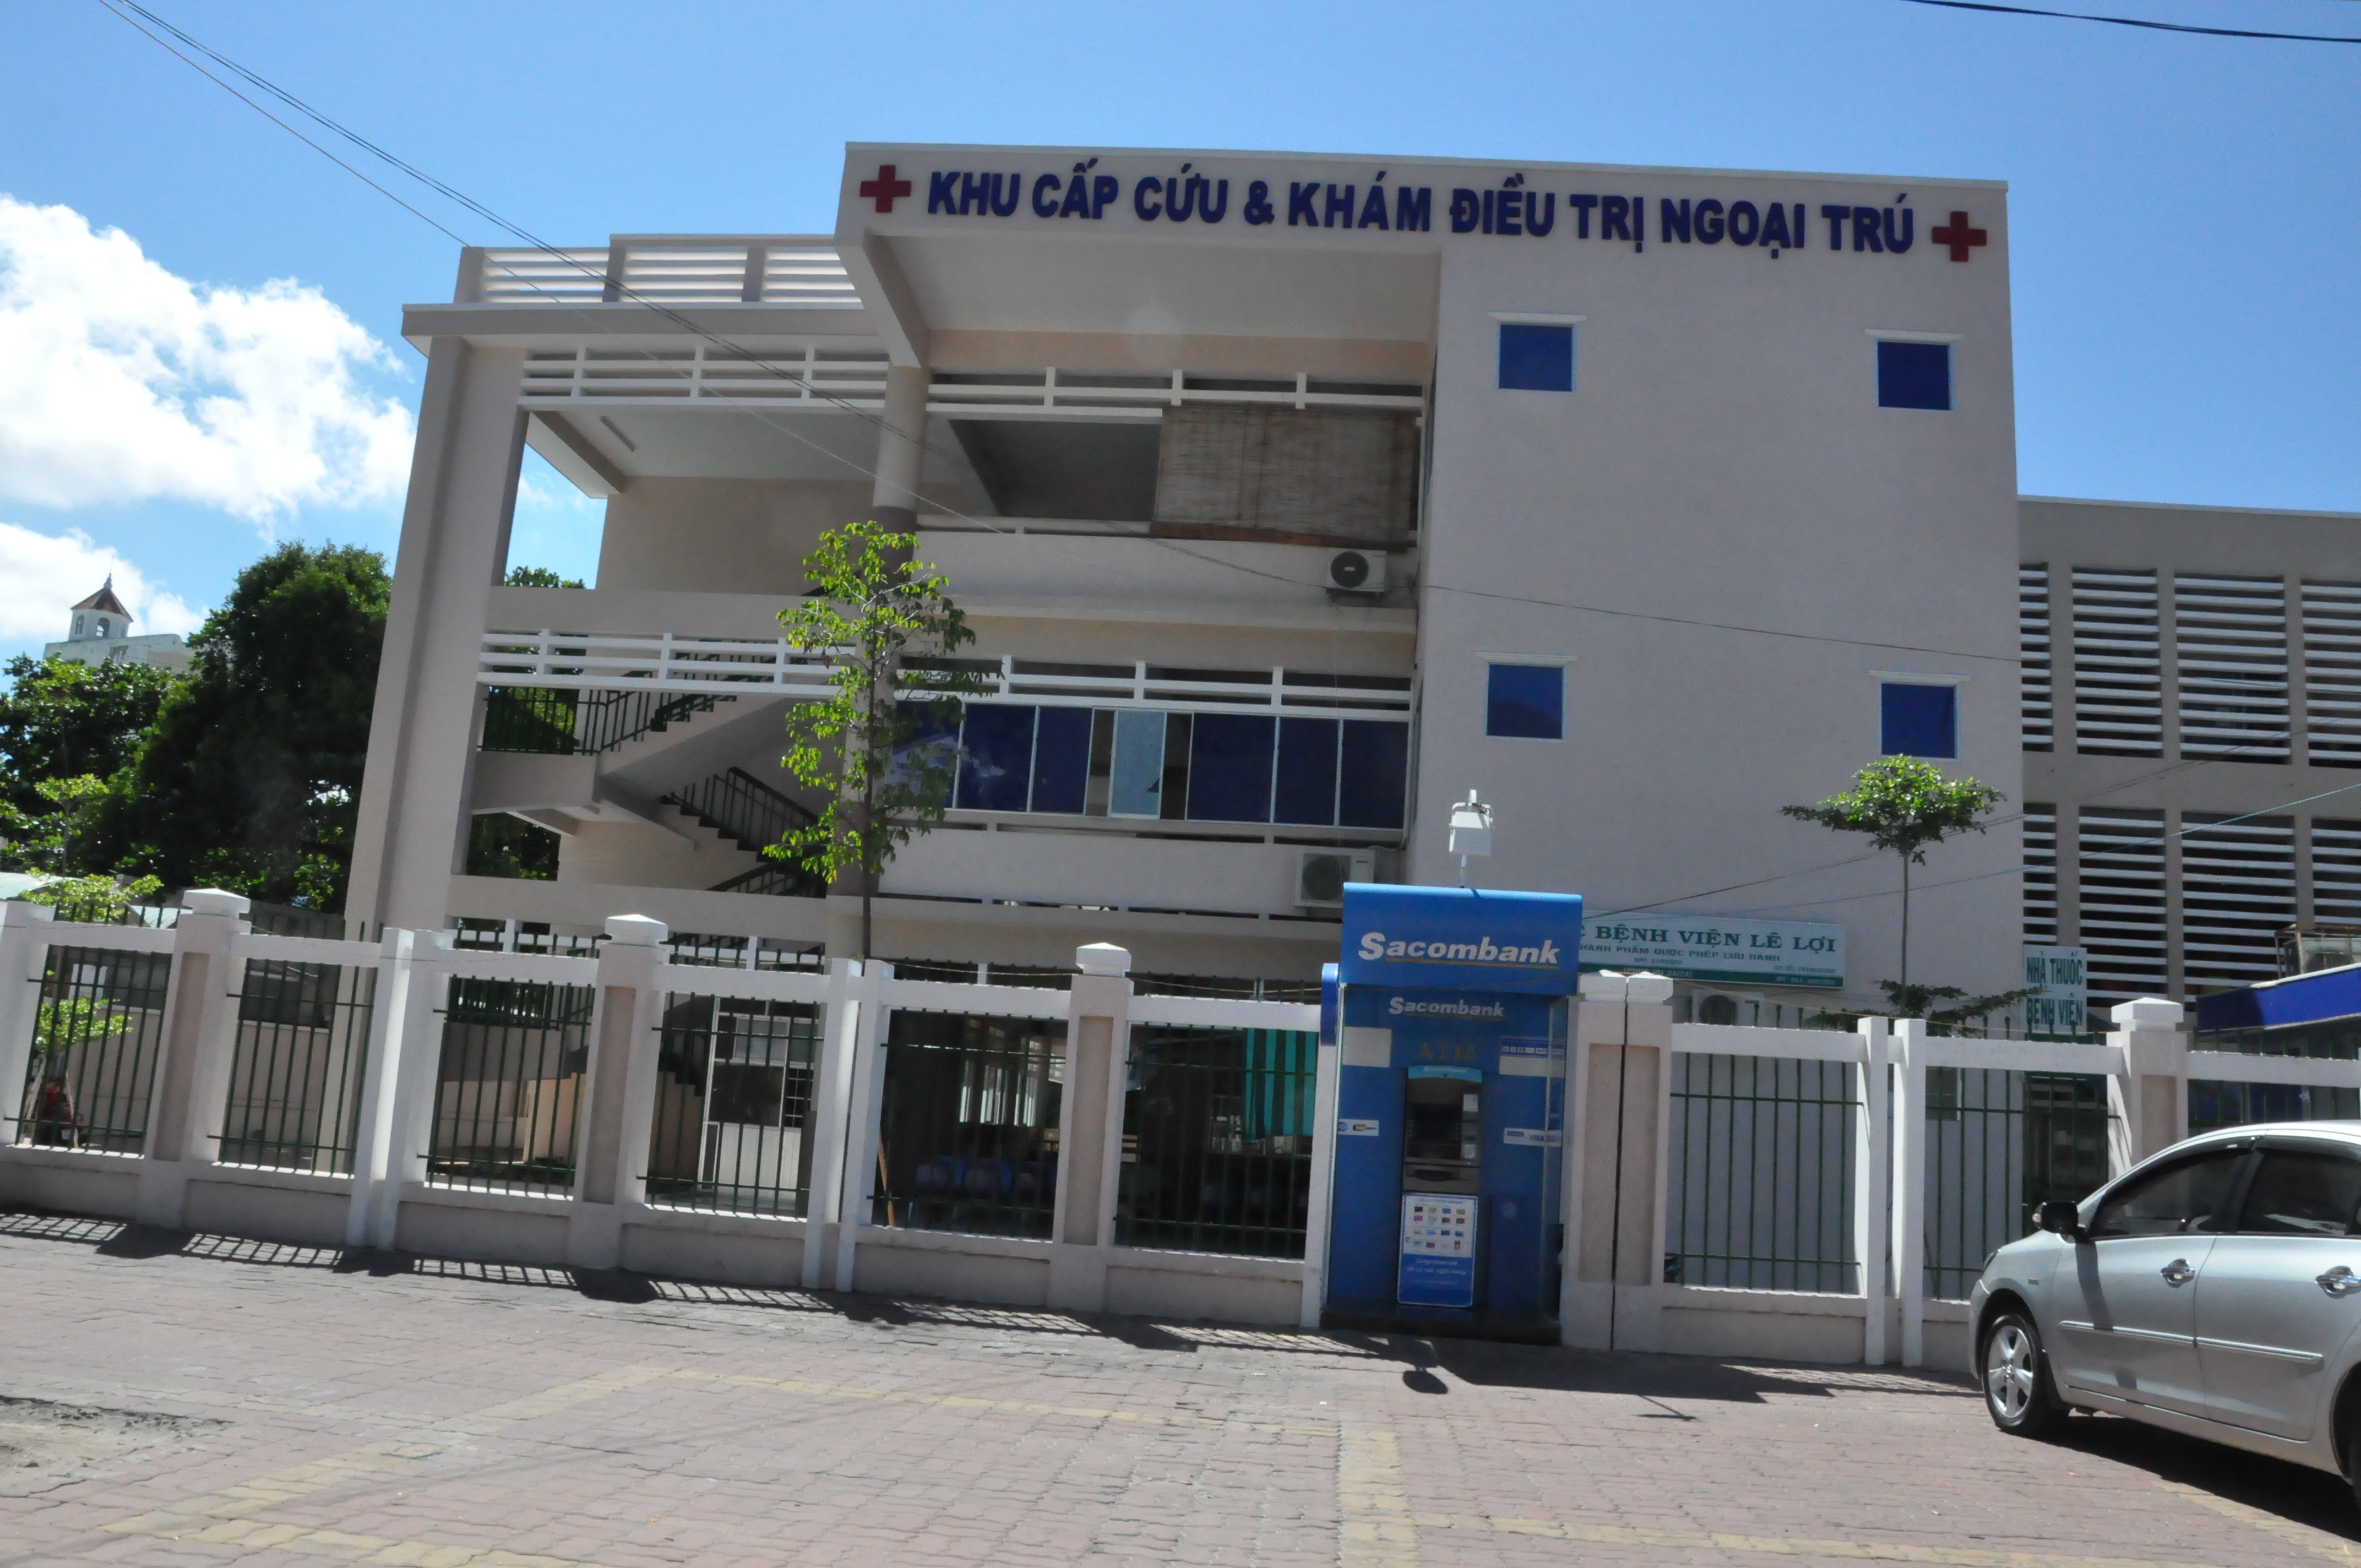 Bệnh viện Lê Lợi - Phòng khám phụ khoa ở Bà Rịa - Vũng Tàu 